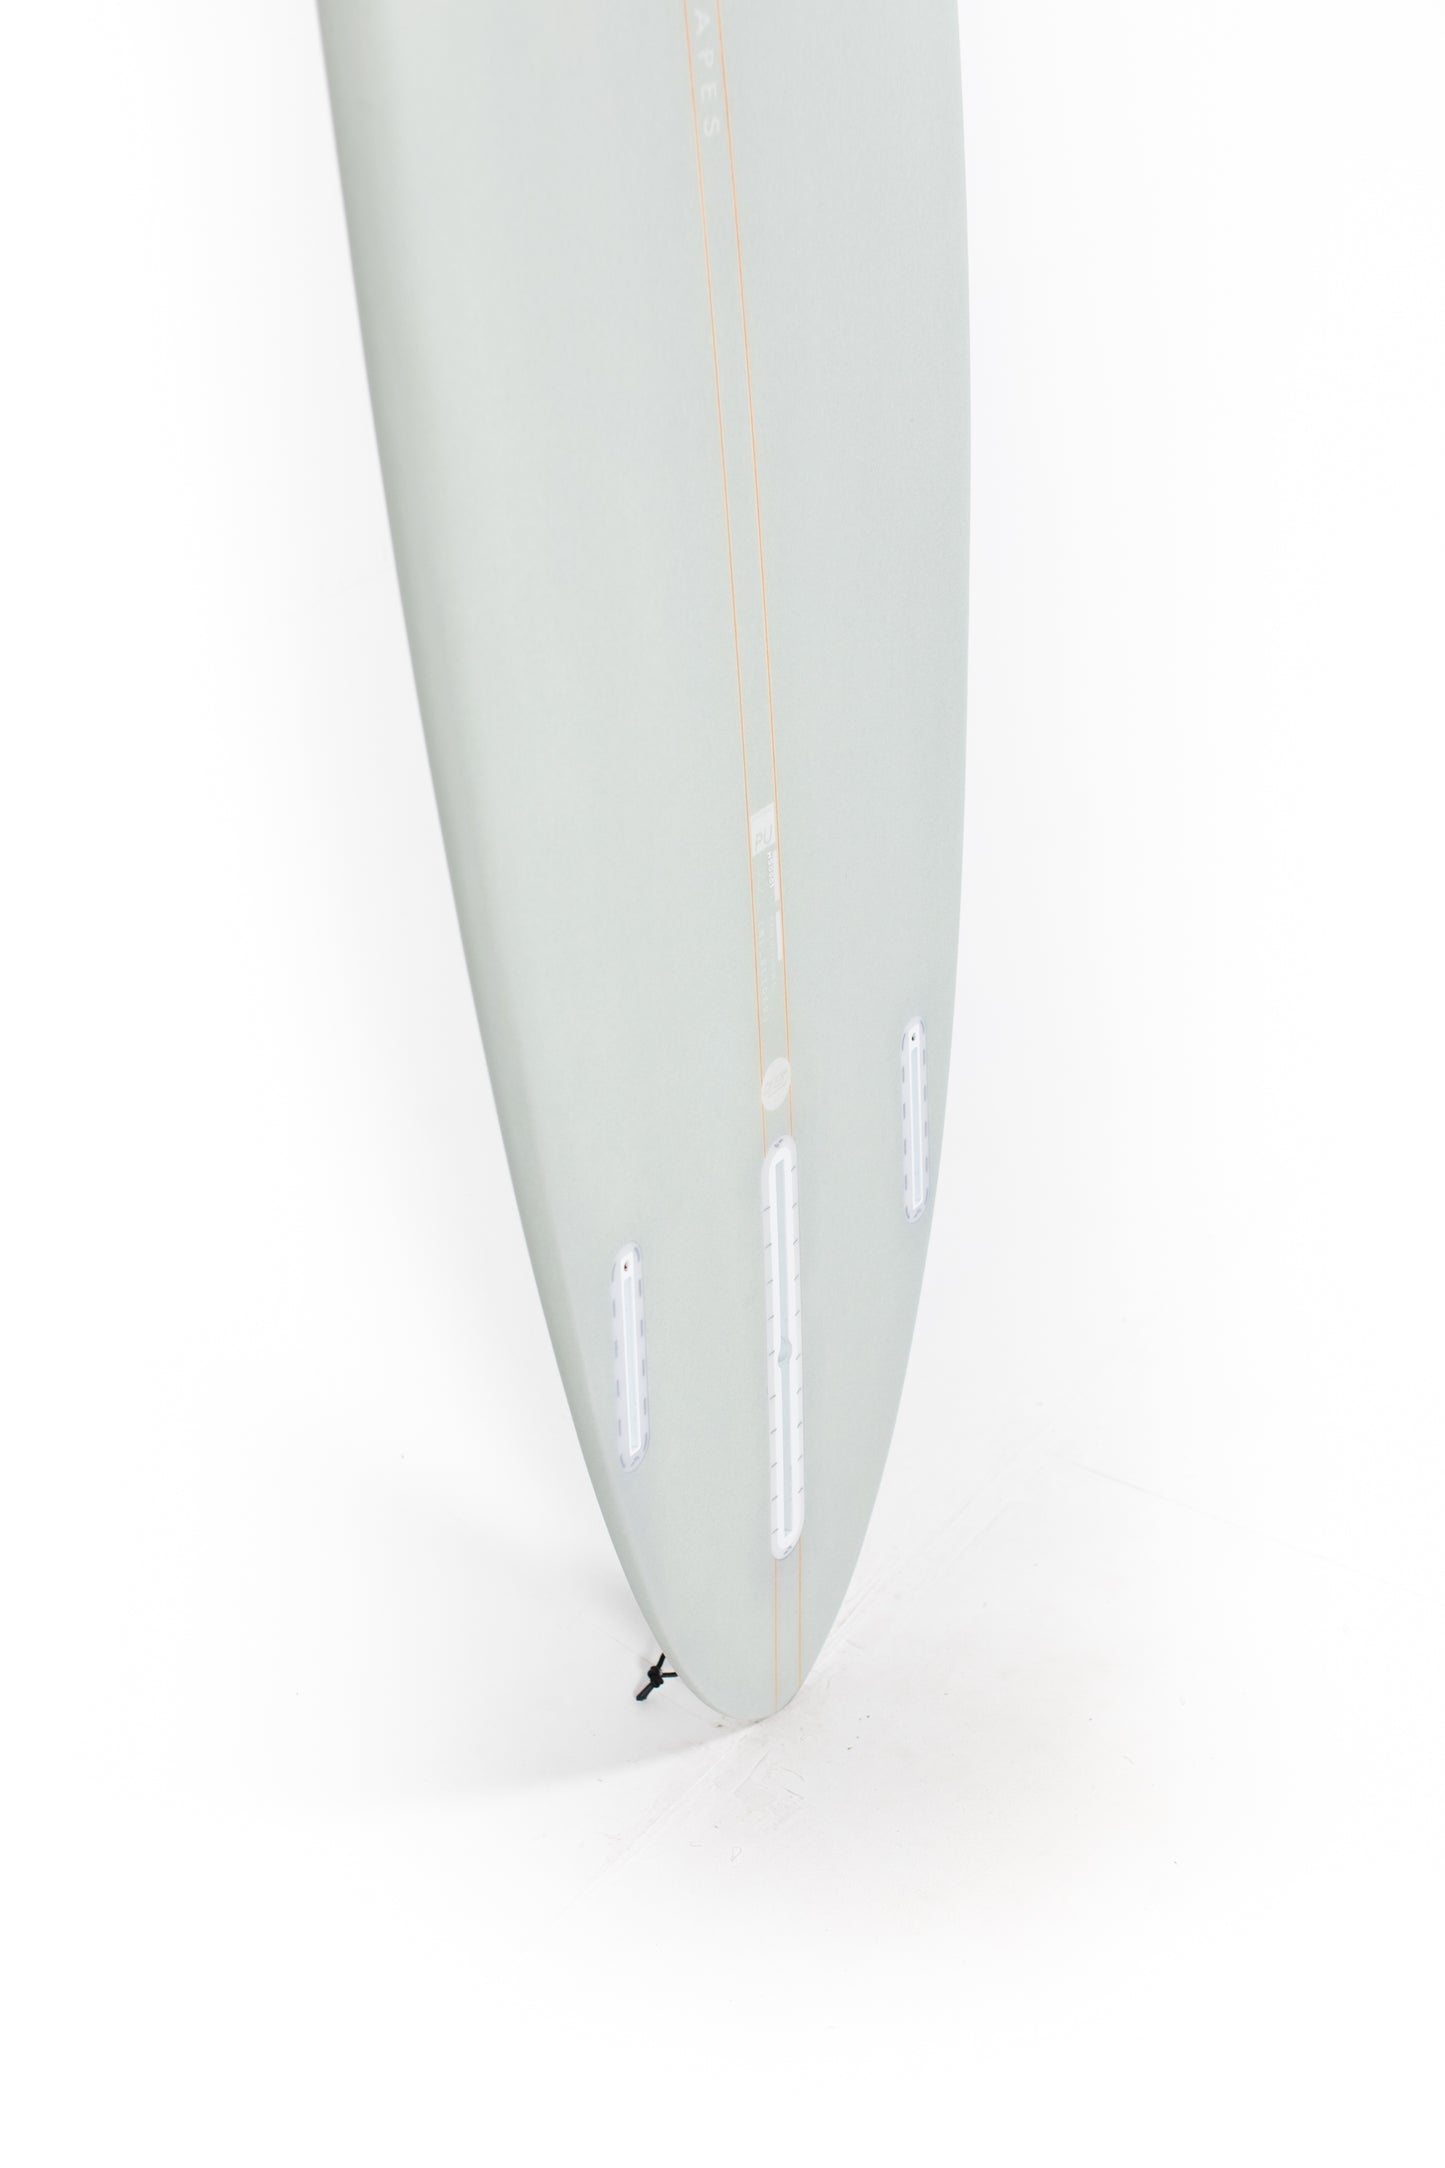 
                  
                    Pukas surf Shop - HaydenShapes Surfboard - MID LENGTH GLIDER - BLU TILE - 6'7" X 20 1/2" X 2 5/8" - 39.5L
                  
                